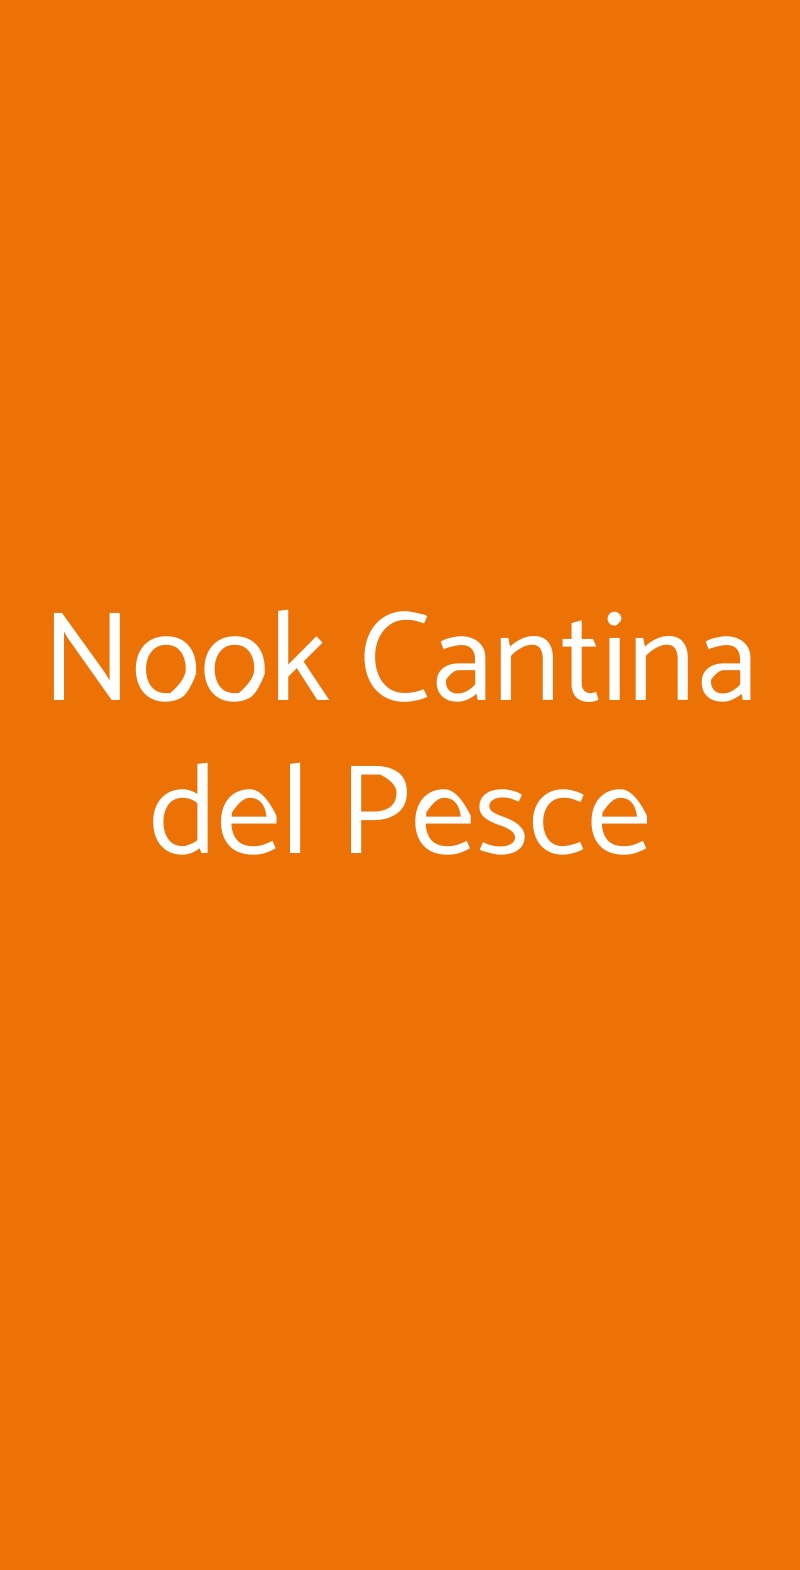 Nook Cantina del Pesce Milano menù 1 pagina